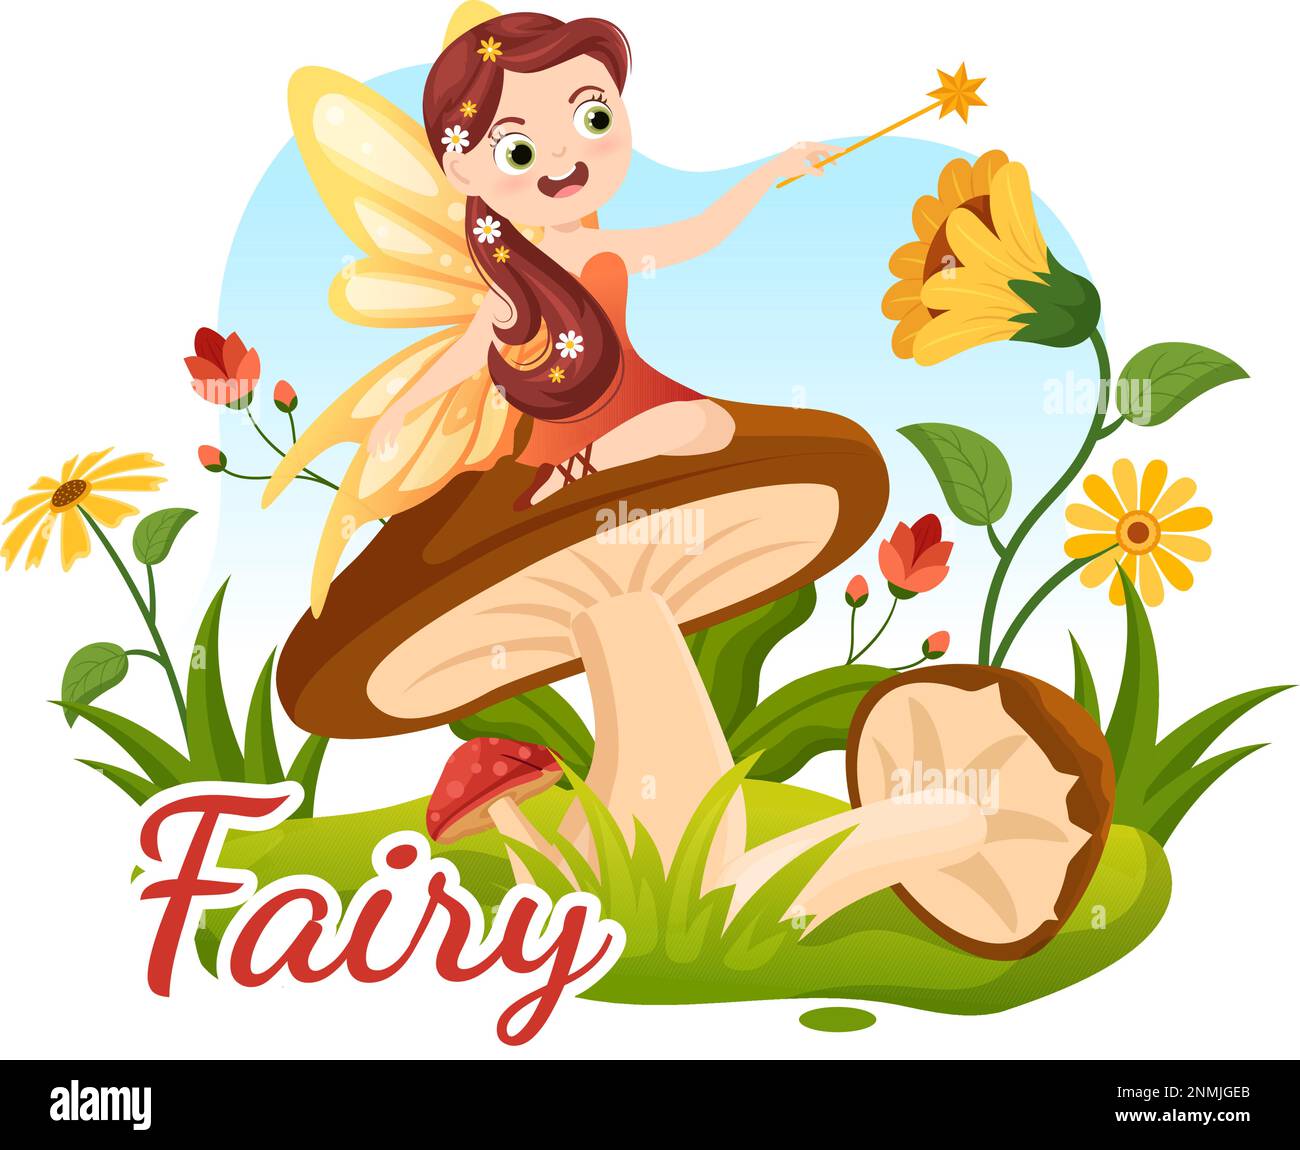 Bella Flying Fairy Illustration con Elf, Landscape Tree e Green Grass in Cartoon piano disegnato a mano per banner Web o modelli di landing page Illustrazione Vettoriale